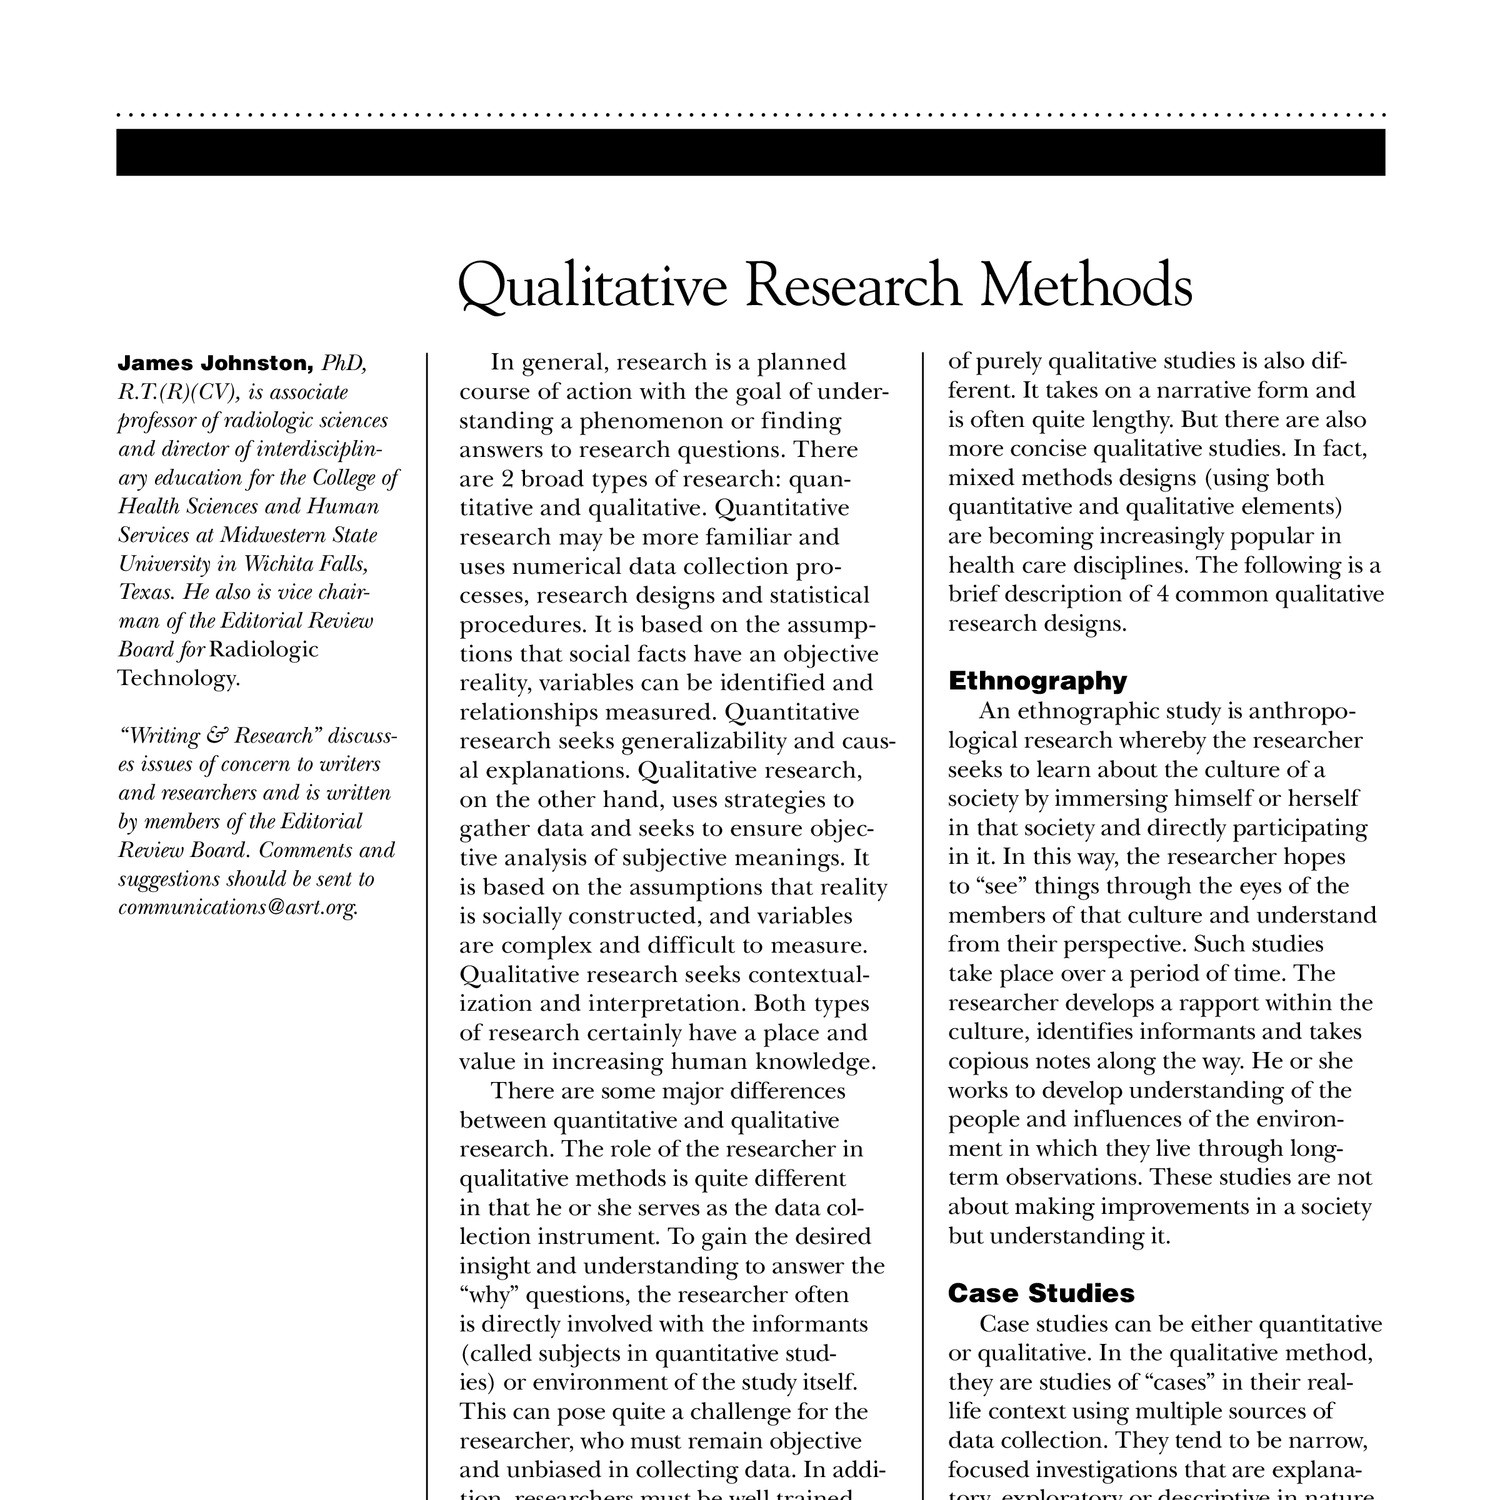 dissertation in qualitative research pdf